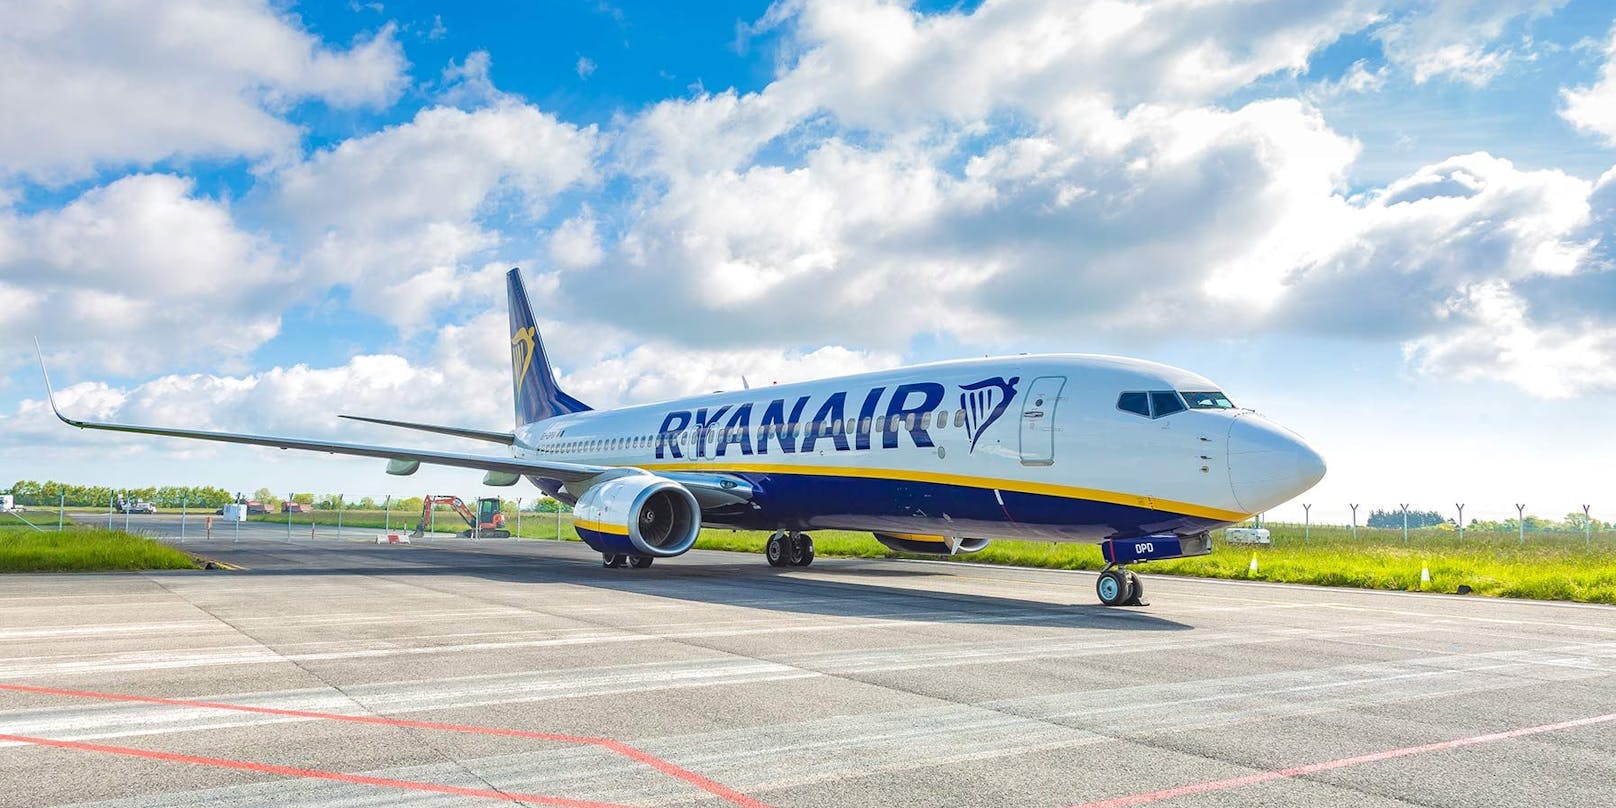 Insgesamt wird es ab Wien dann pro Woche 600 Ryanair-Flüge geben.